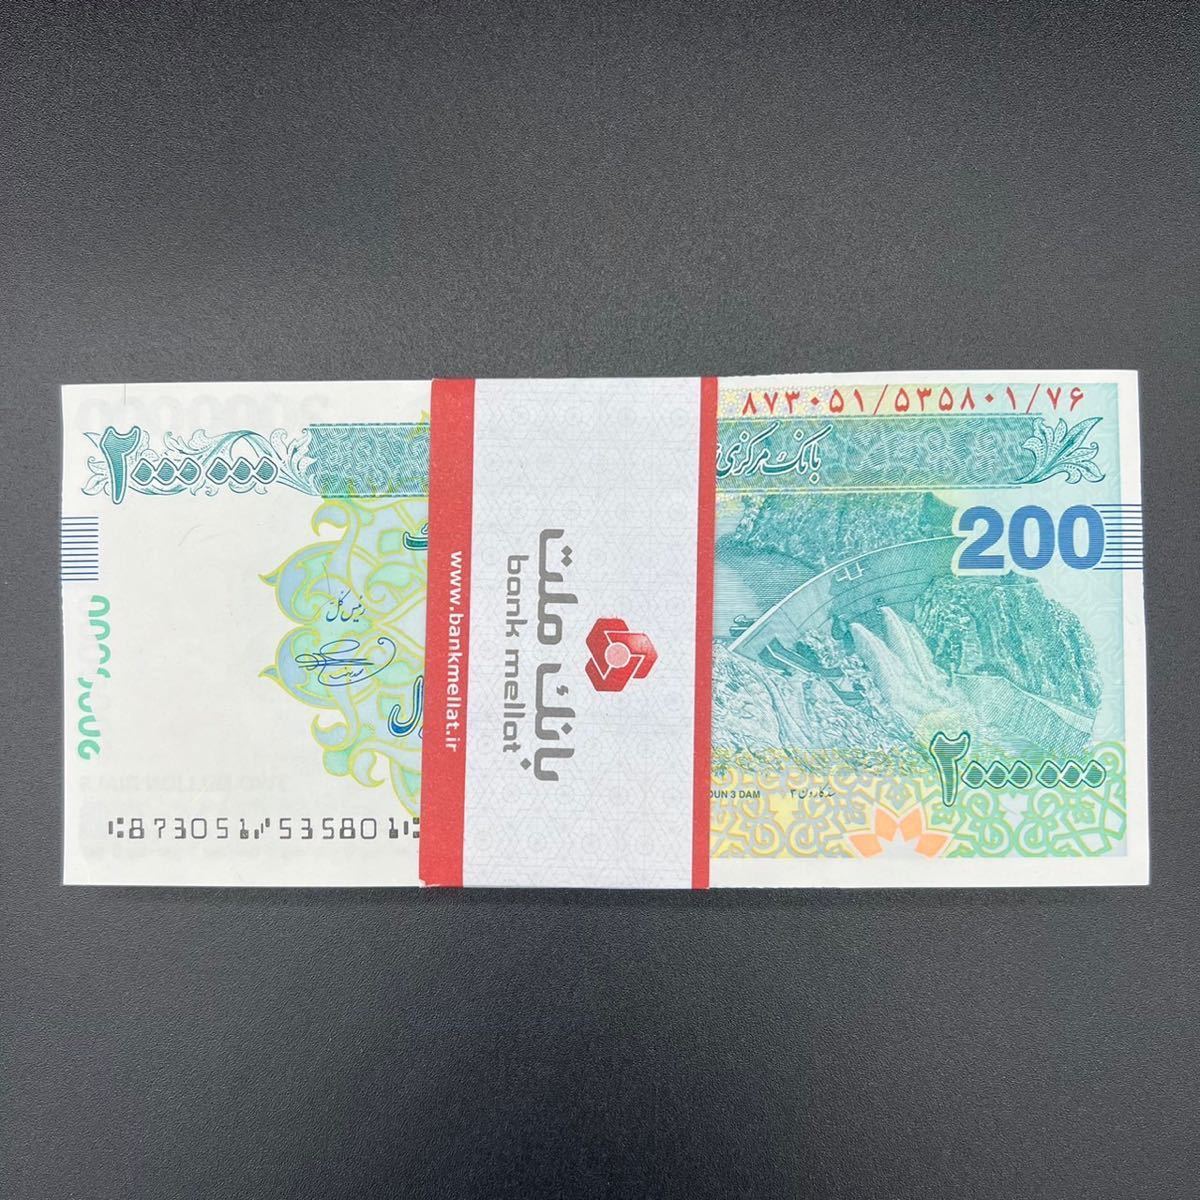 イラン 200万リアル紙幣 100枚連番 最高額紙幣 新品未使用 ゆうパック発送